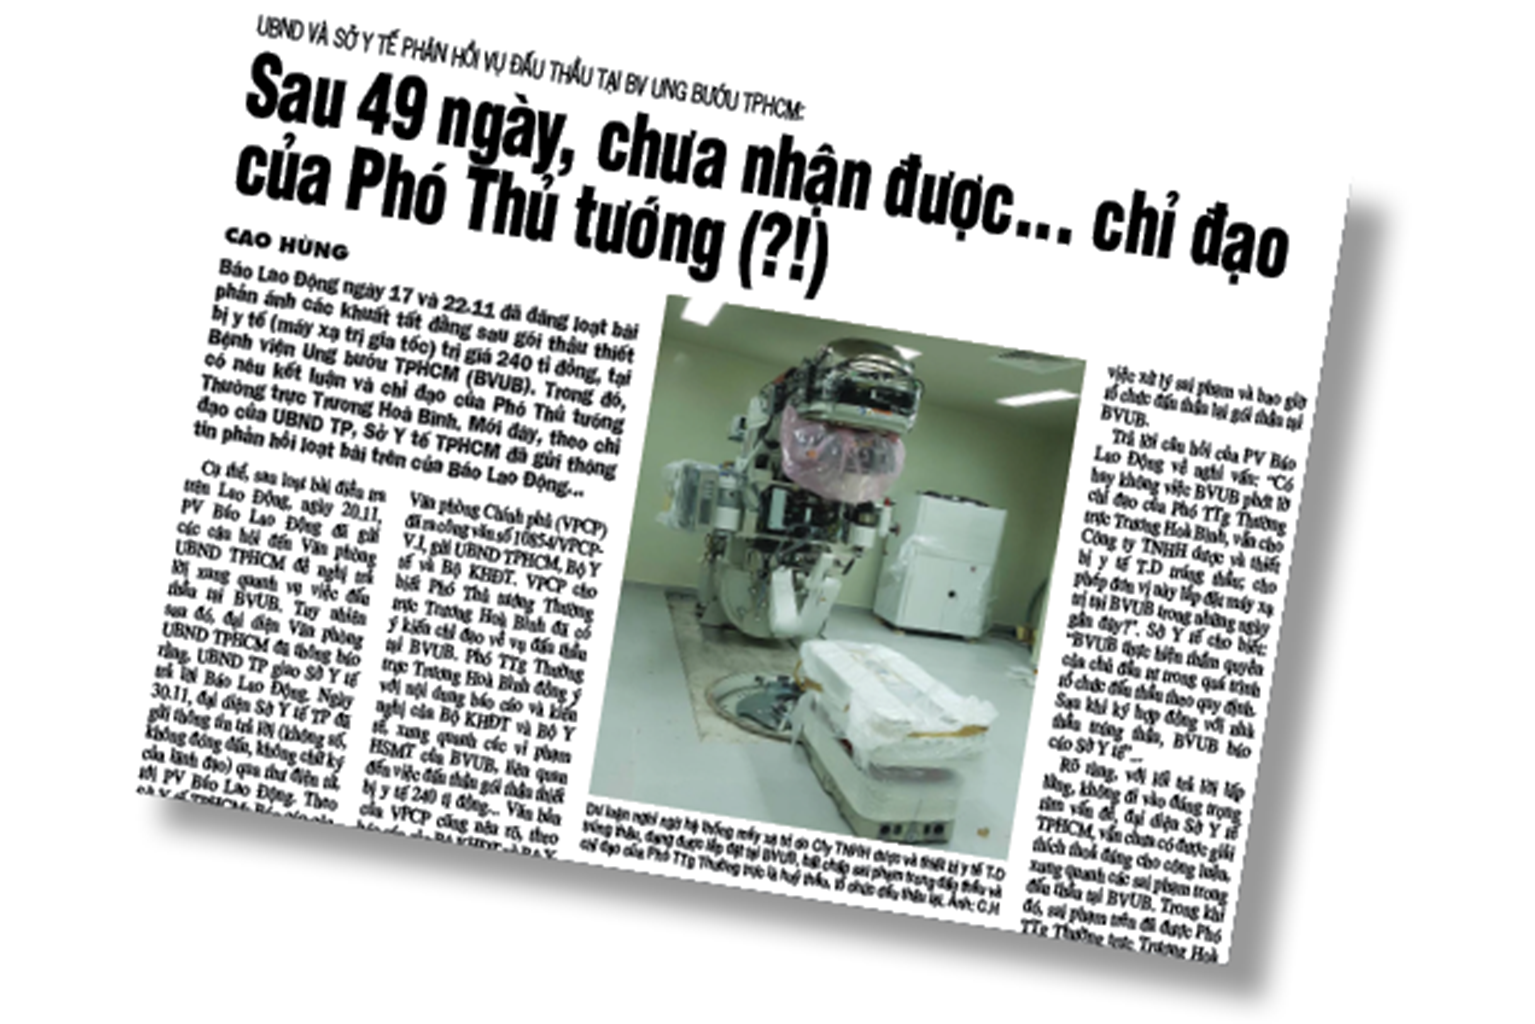 Bài báo về sai phạm  tại BV Ung bướu TPHCM  đăng trên Lao Động ngày 1.12.